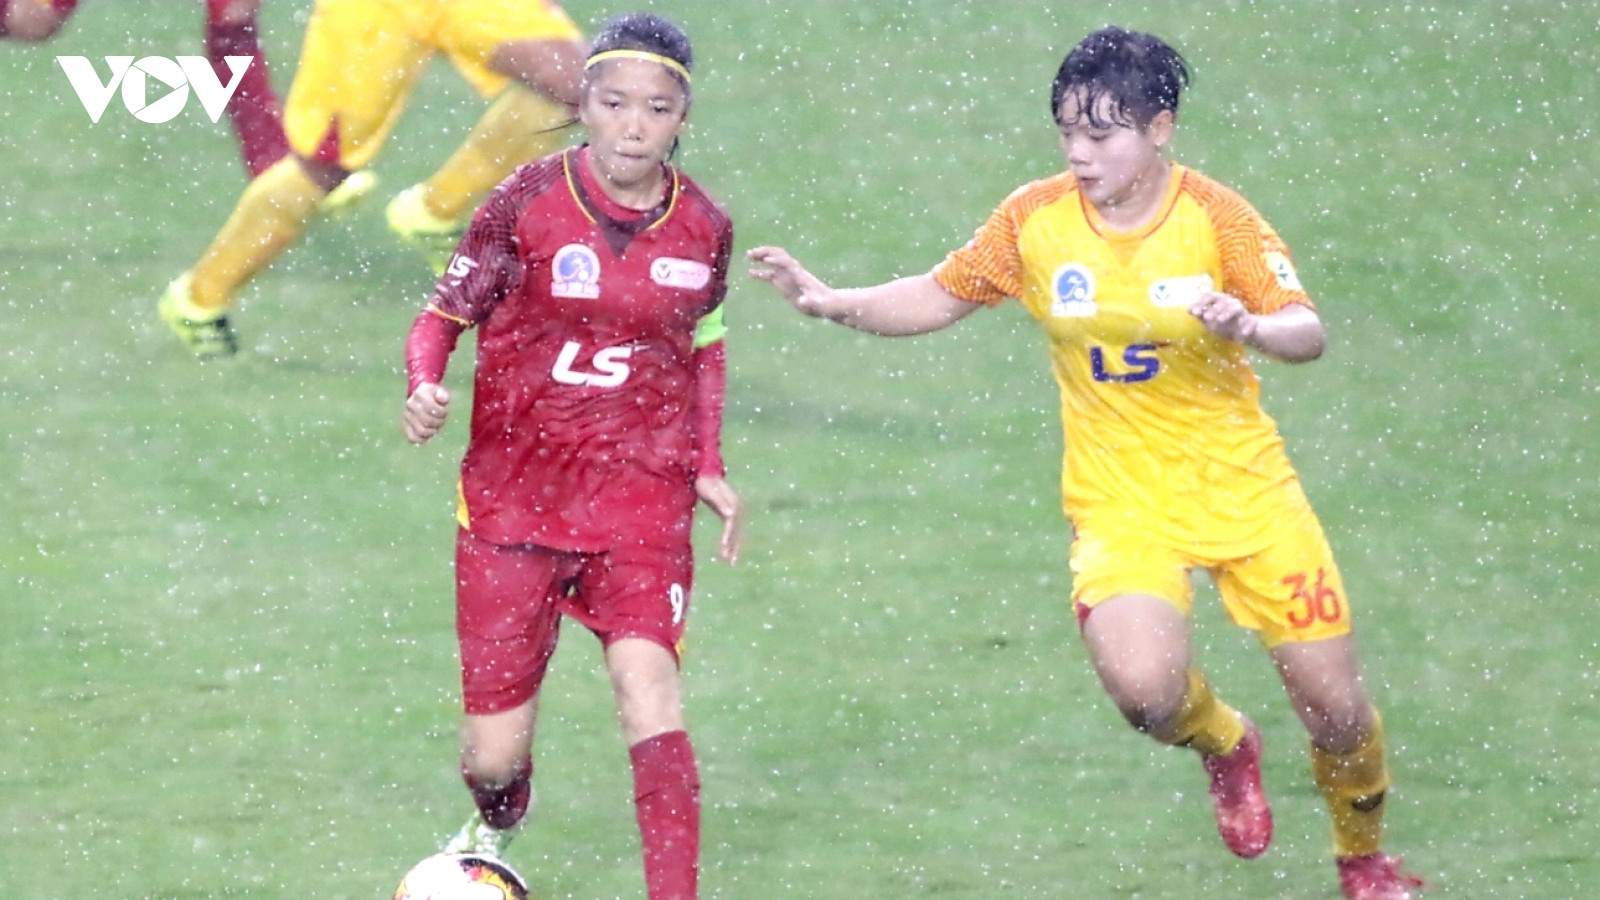 Chùm ảnh: Cầu thủ nữ "đội mưa" thi đấu ngày khai mạc giải VĐQG